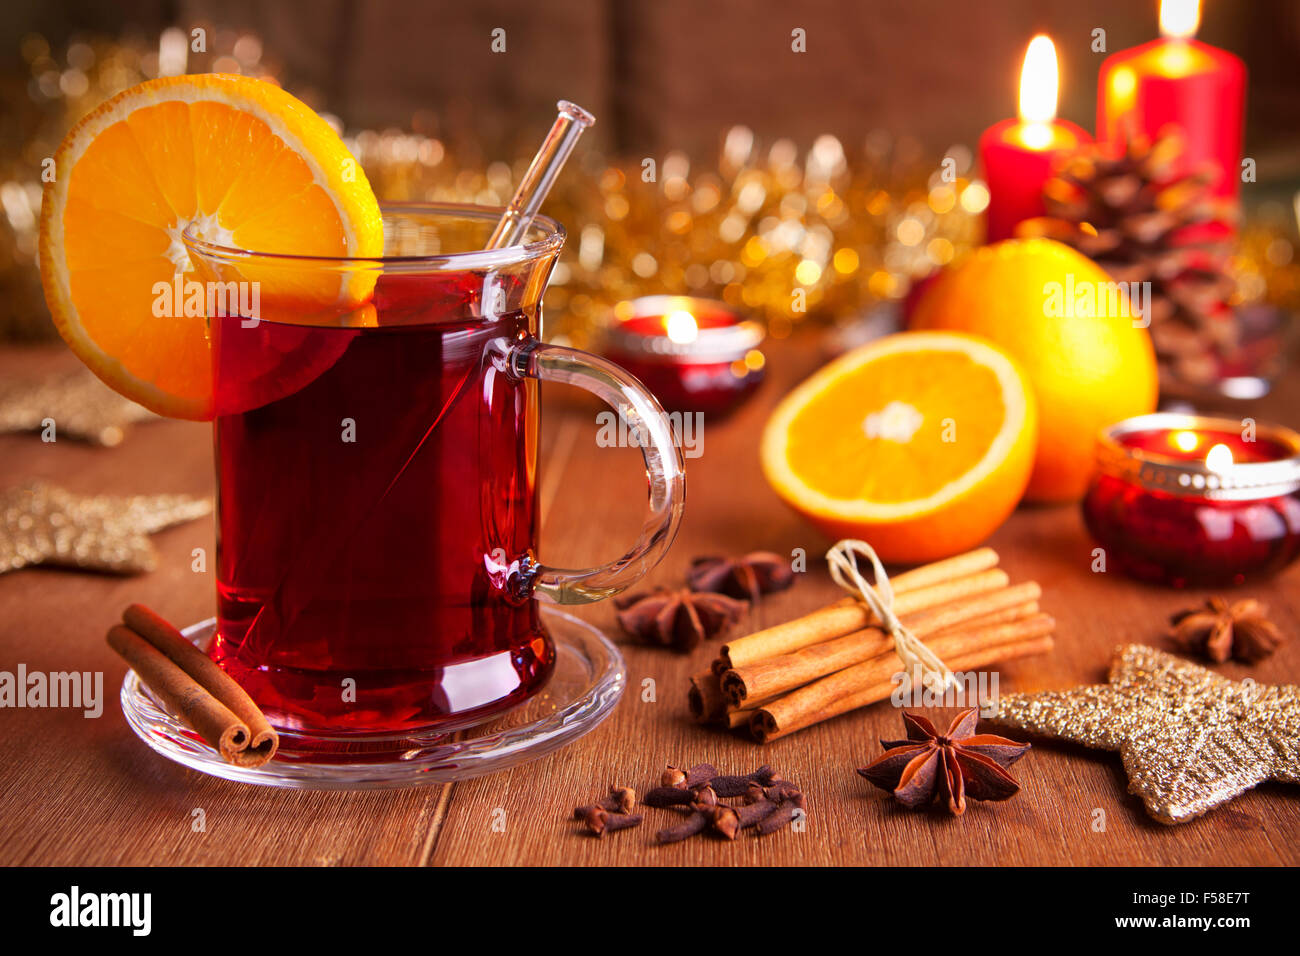 Ein Glas Glühwein oder Glühwein auf einem rustikalen Tisch mit Zutaten und Weihnachtsschmuck. Stockfoto